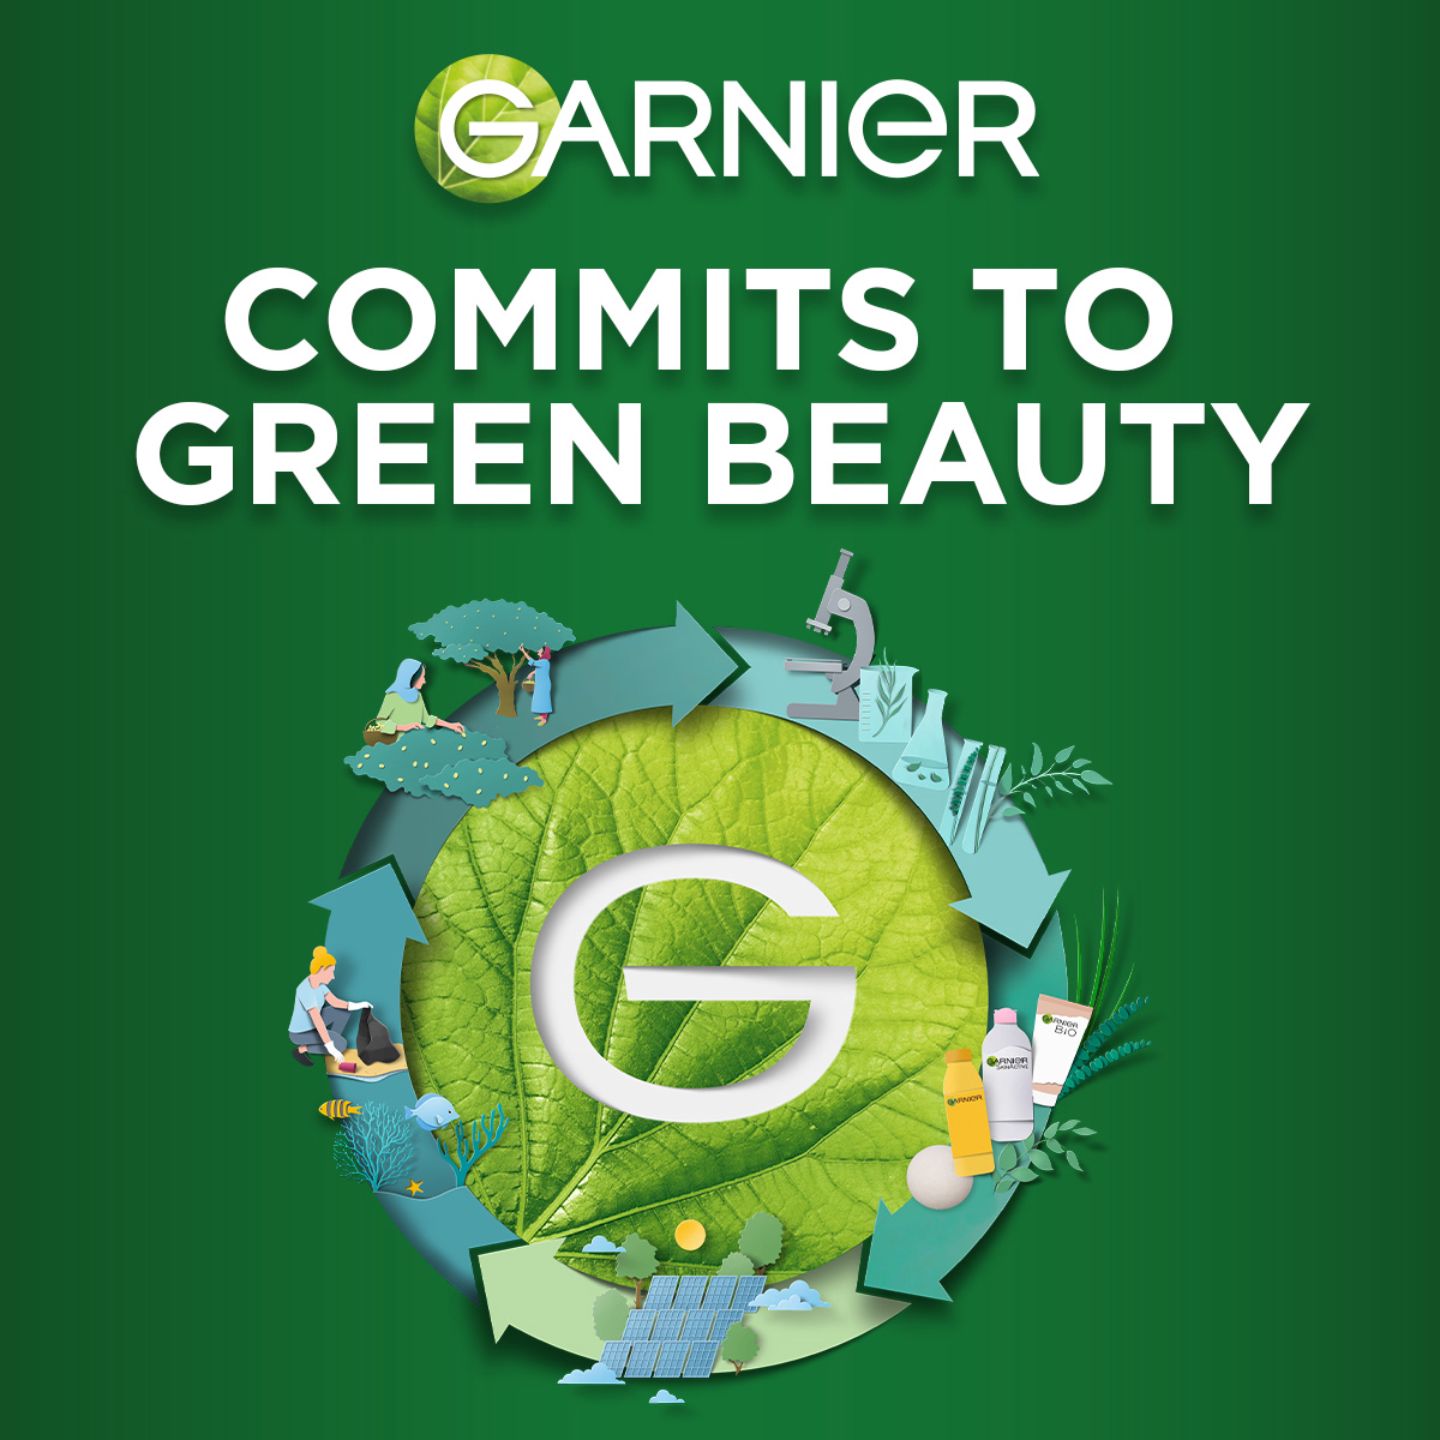 Garnier commits to green beauty banner met logo van garnier